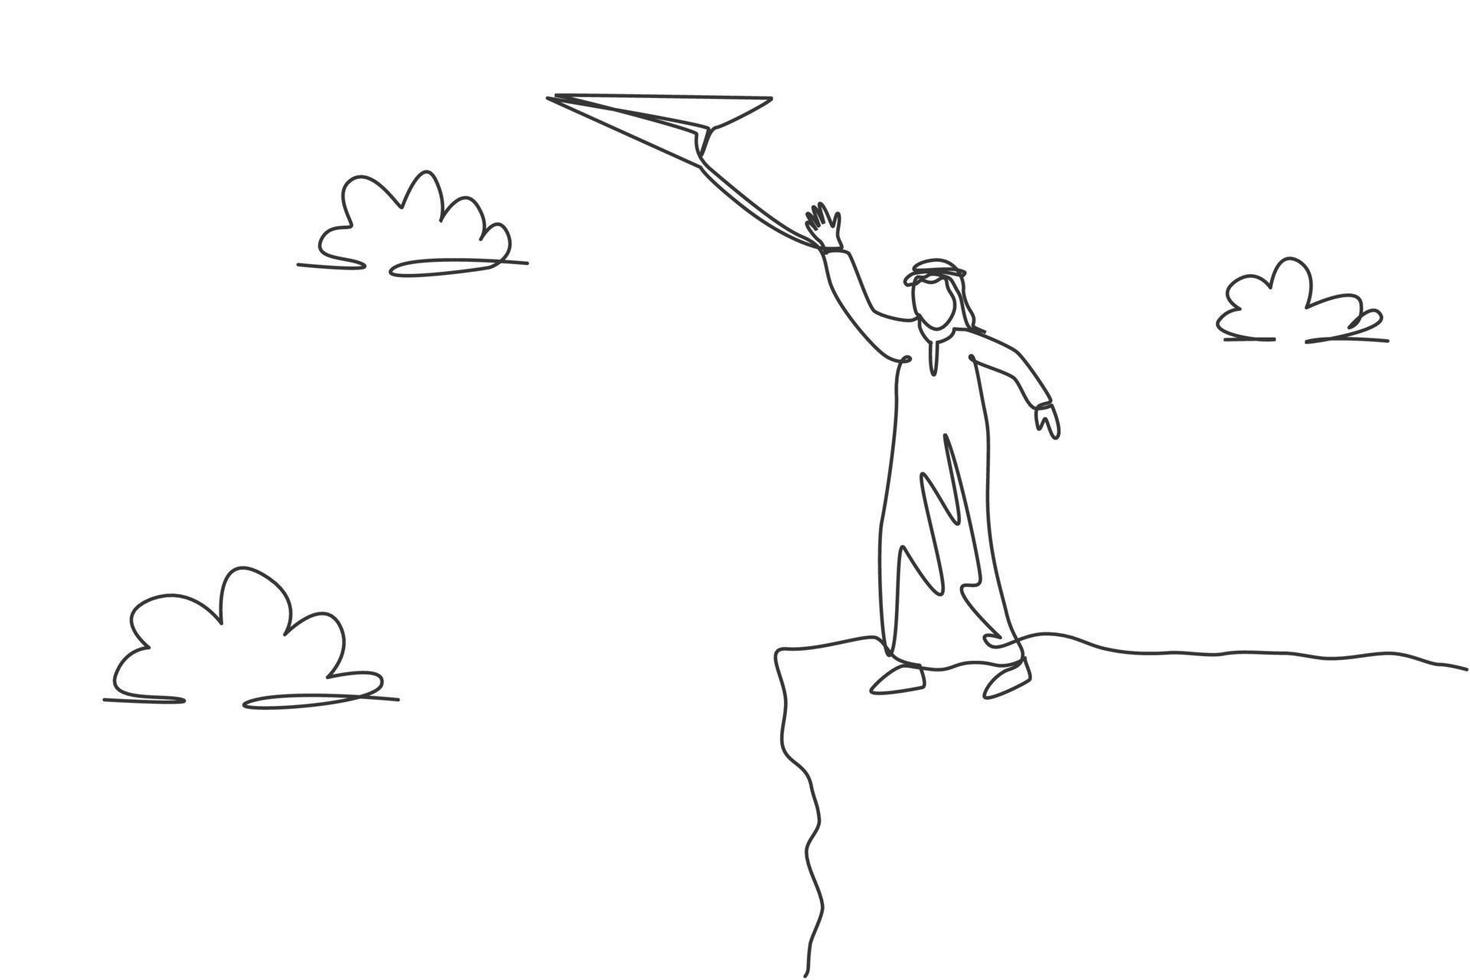 única linha contínua desenho jovem homem de negócios árabe acenando com a mão para voar o avião de papel do topo da montanha. conceito de metáfora do minimalismo. ilustração em vetor desenho gráfico dinâmica de uma linha